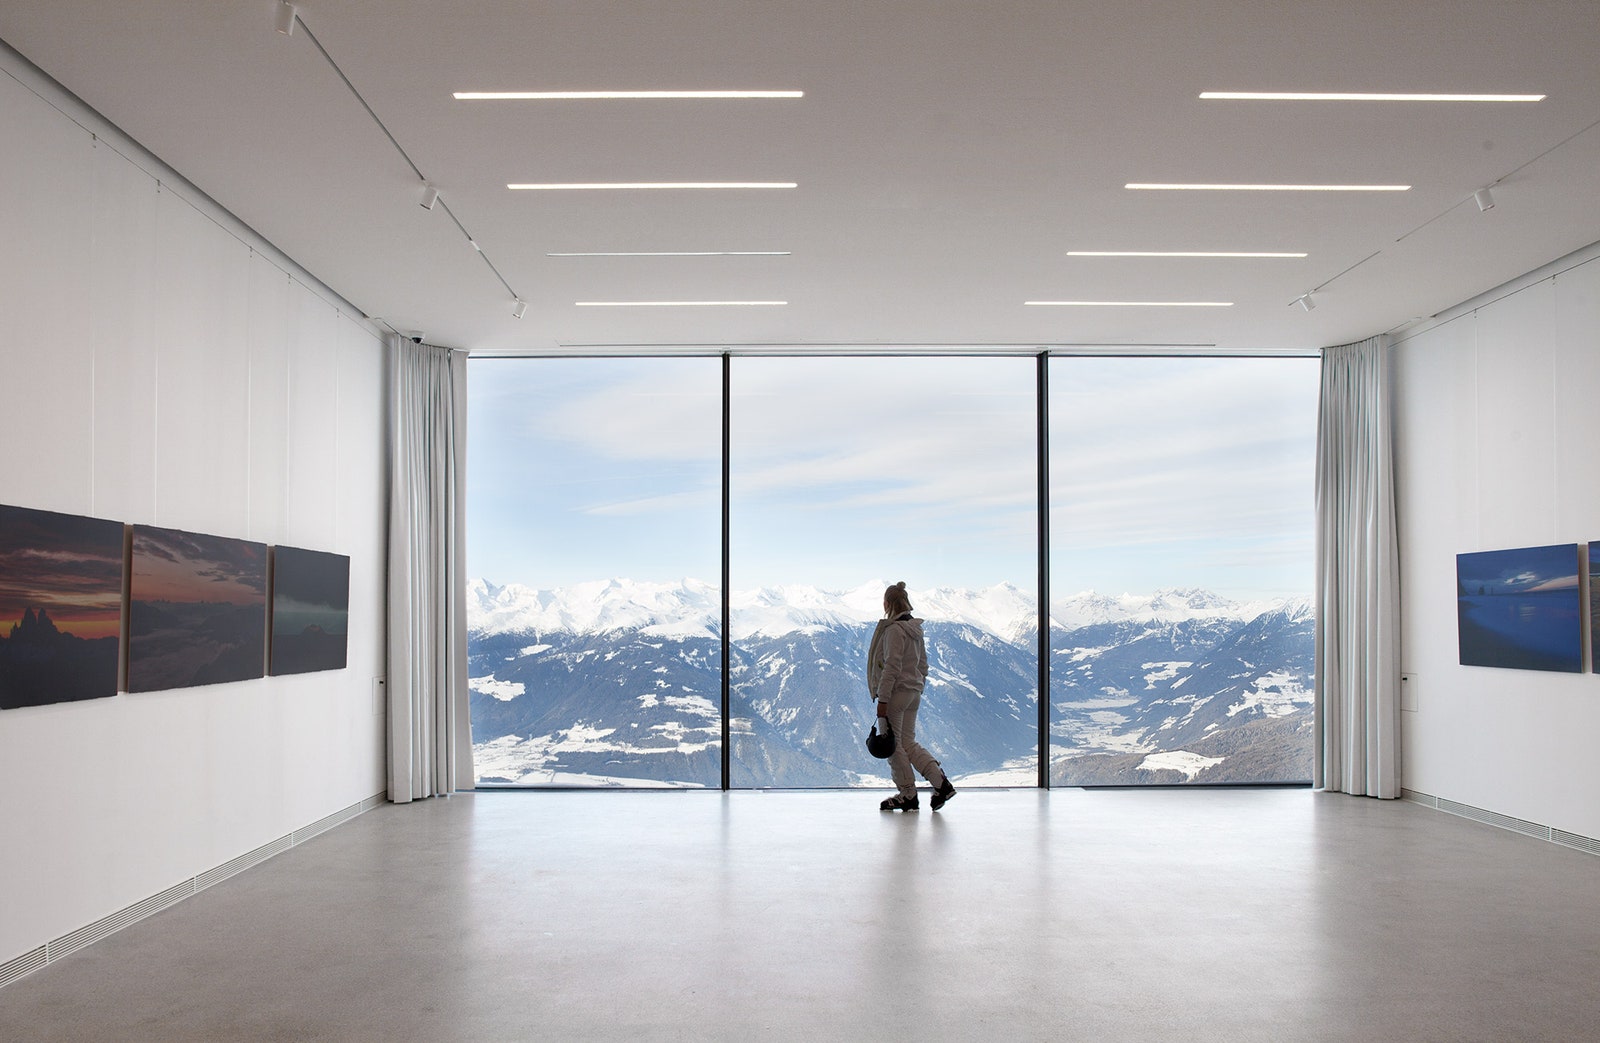 Архитектурный проект музея Райнхольда Месснера в Доломитовых Альпах — Lumen